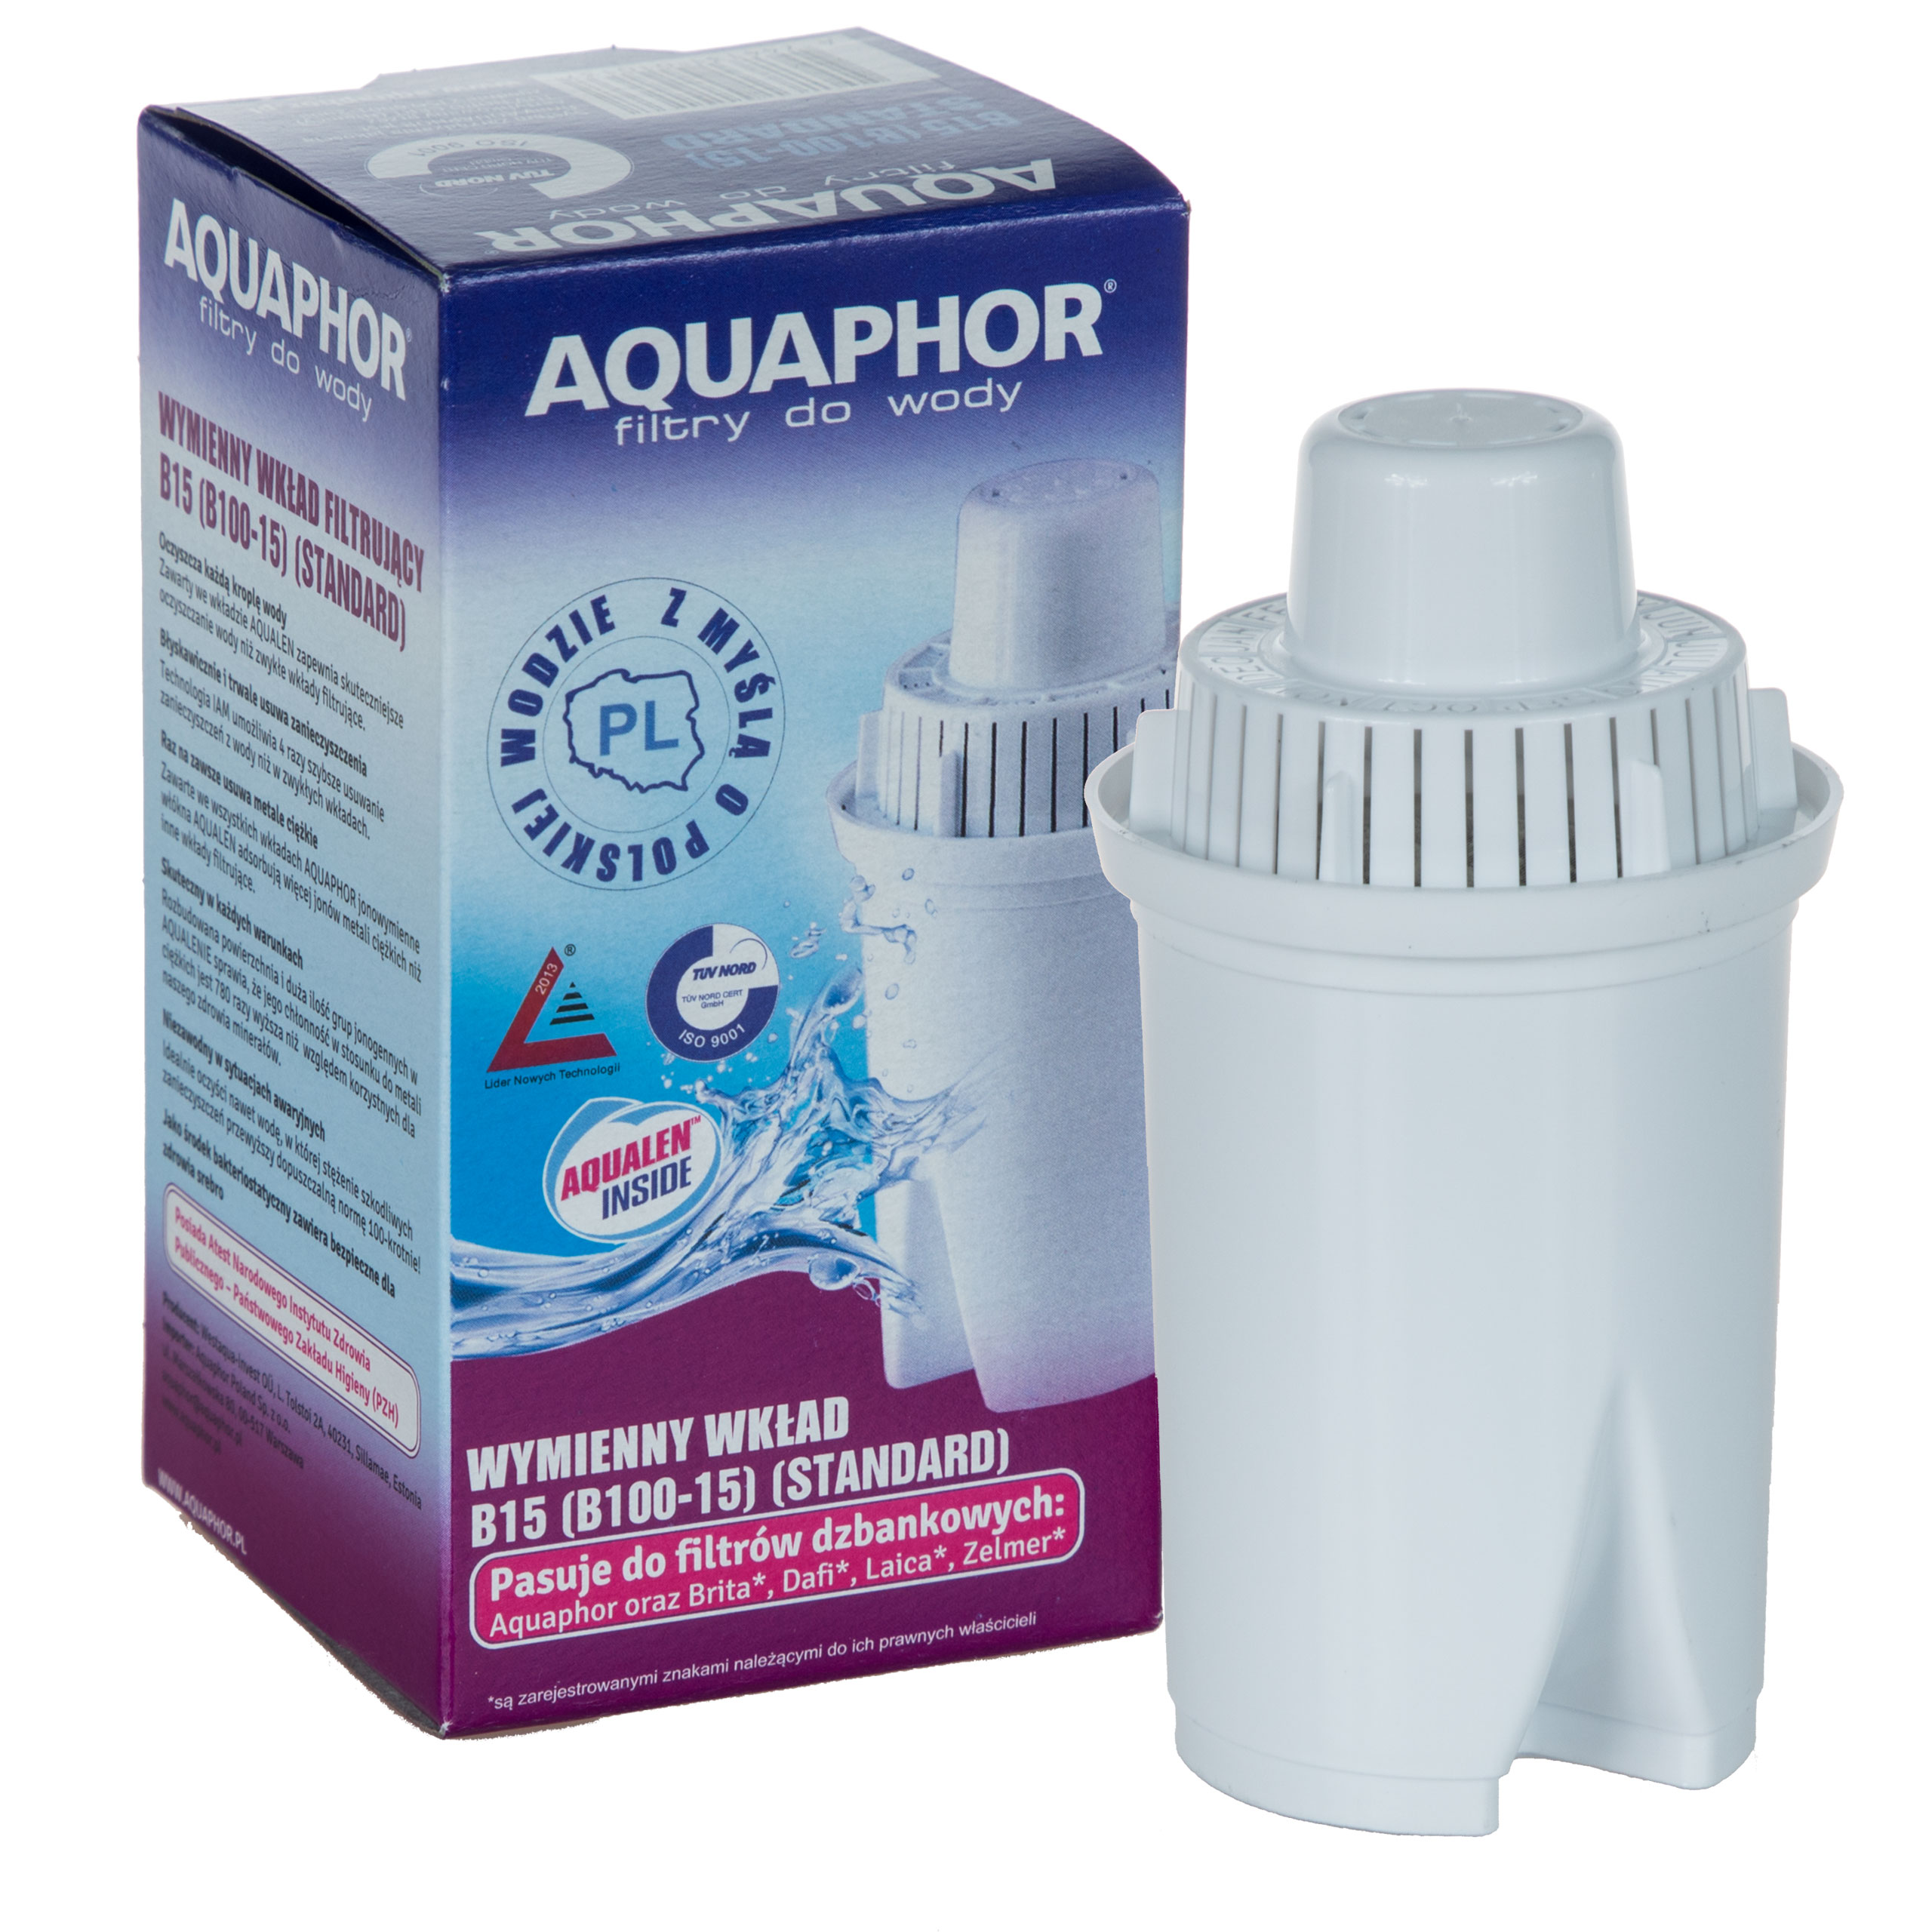 Картридж для фильтра аквафор купить в спб. Фильтр Аквафор в 100-15. Фильтр для воды Аквафор в100-15. Aquaphor Filter Cartridge b15 (b100-15). Фильтр Аквафор 100.